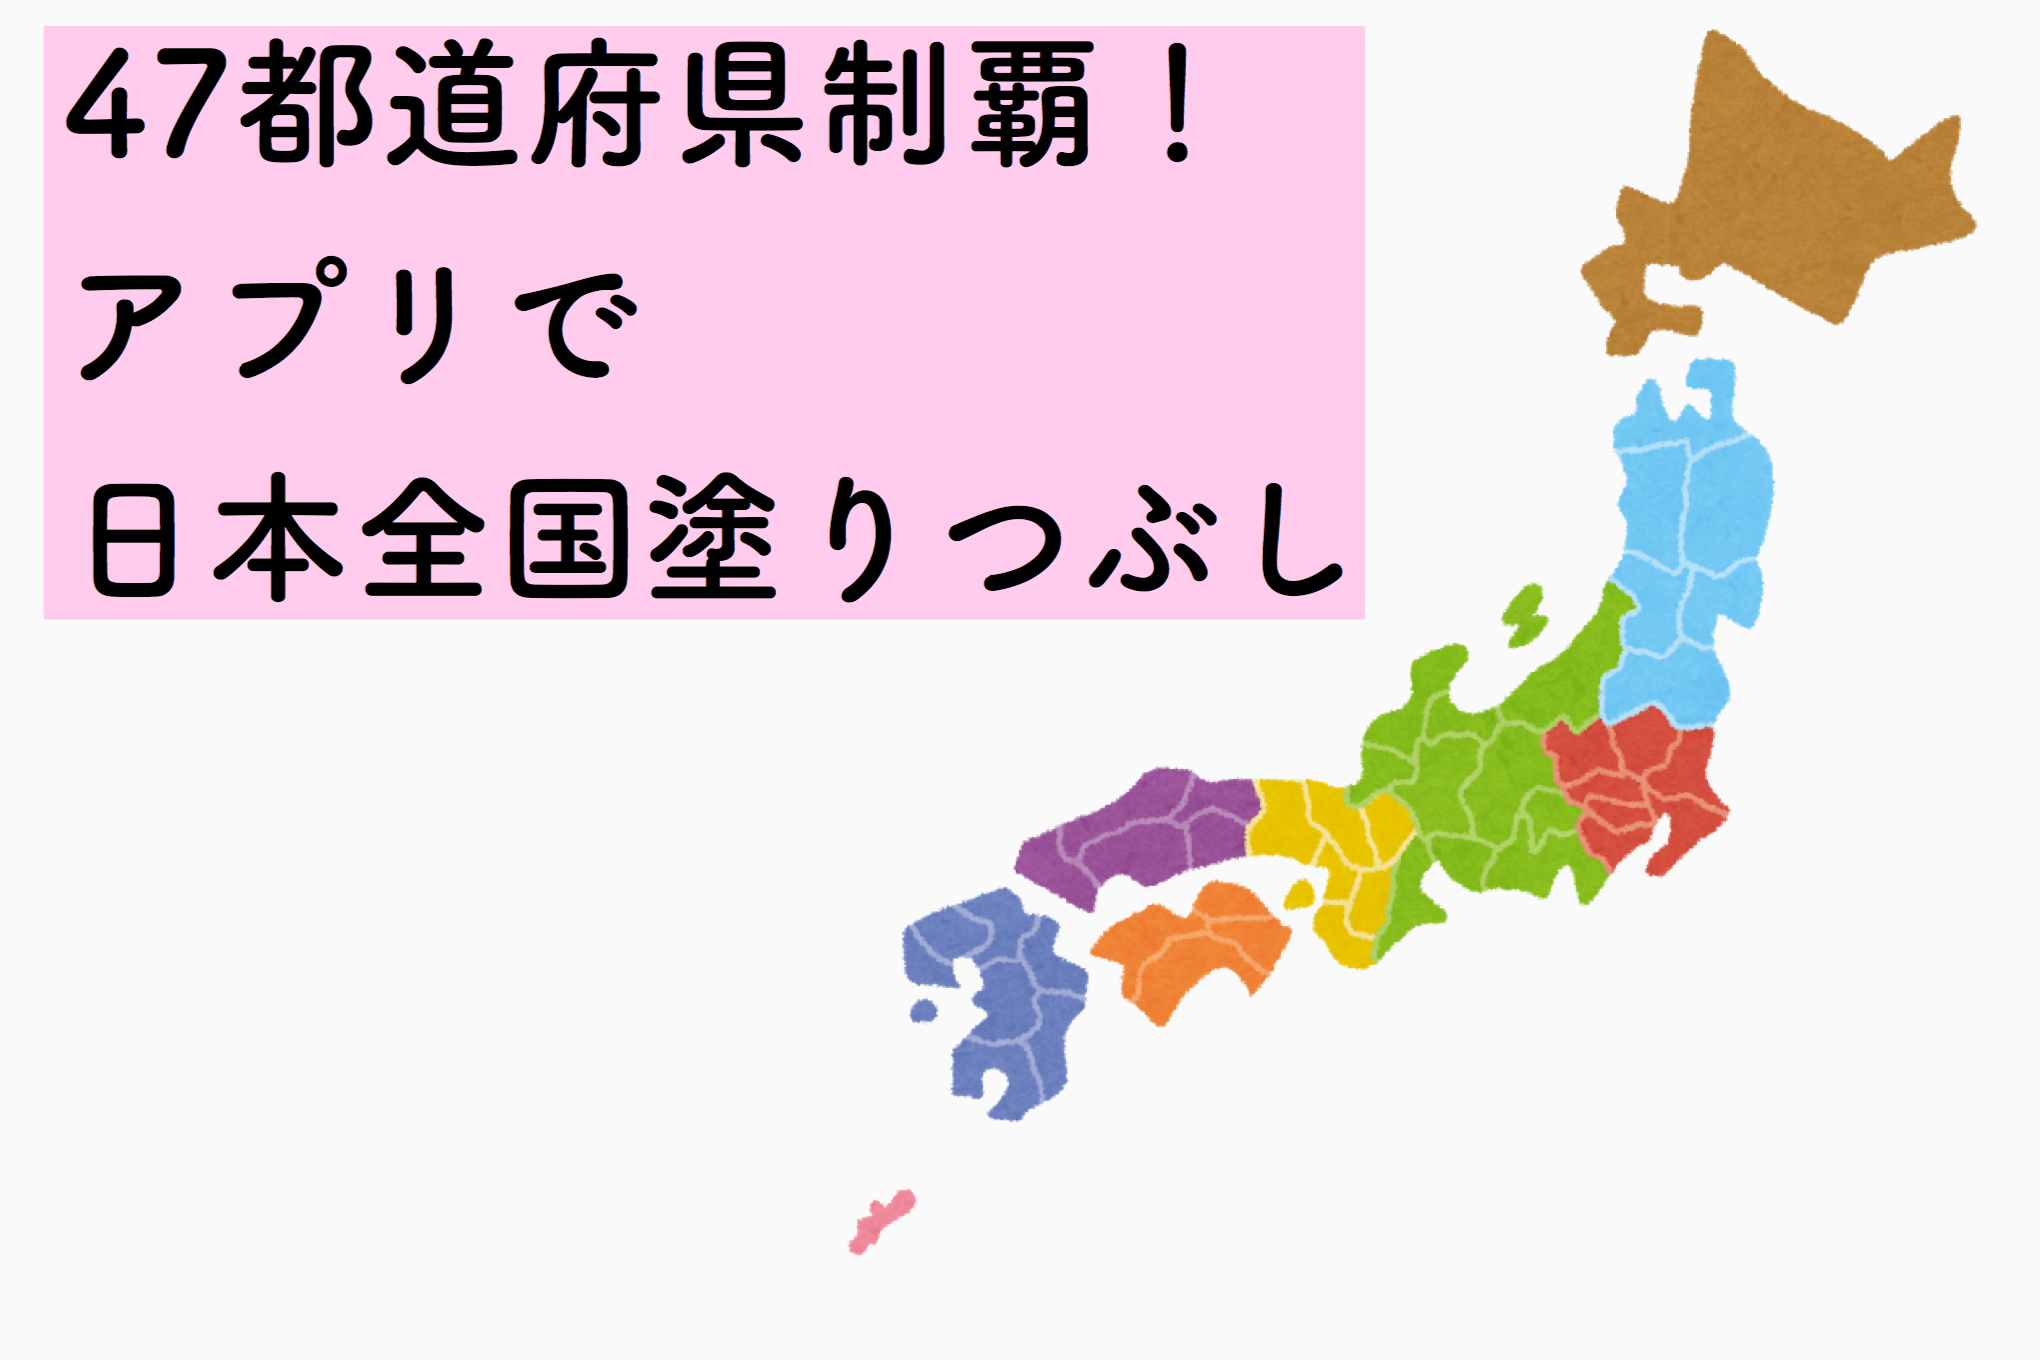 いくつ行ったことある 47都道府県制覇 アプリで日本全国塗りつぶし シンプルトリップ ライフ